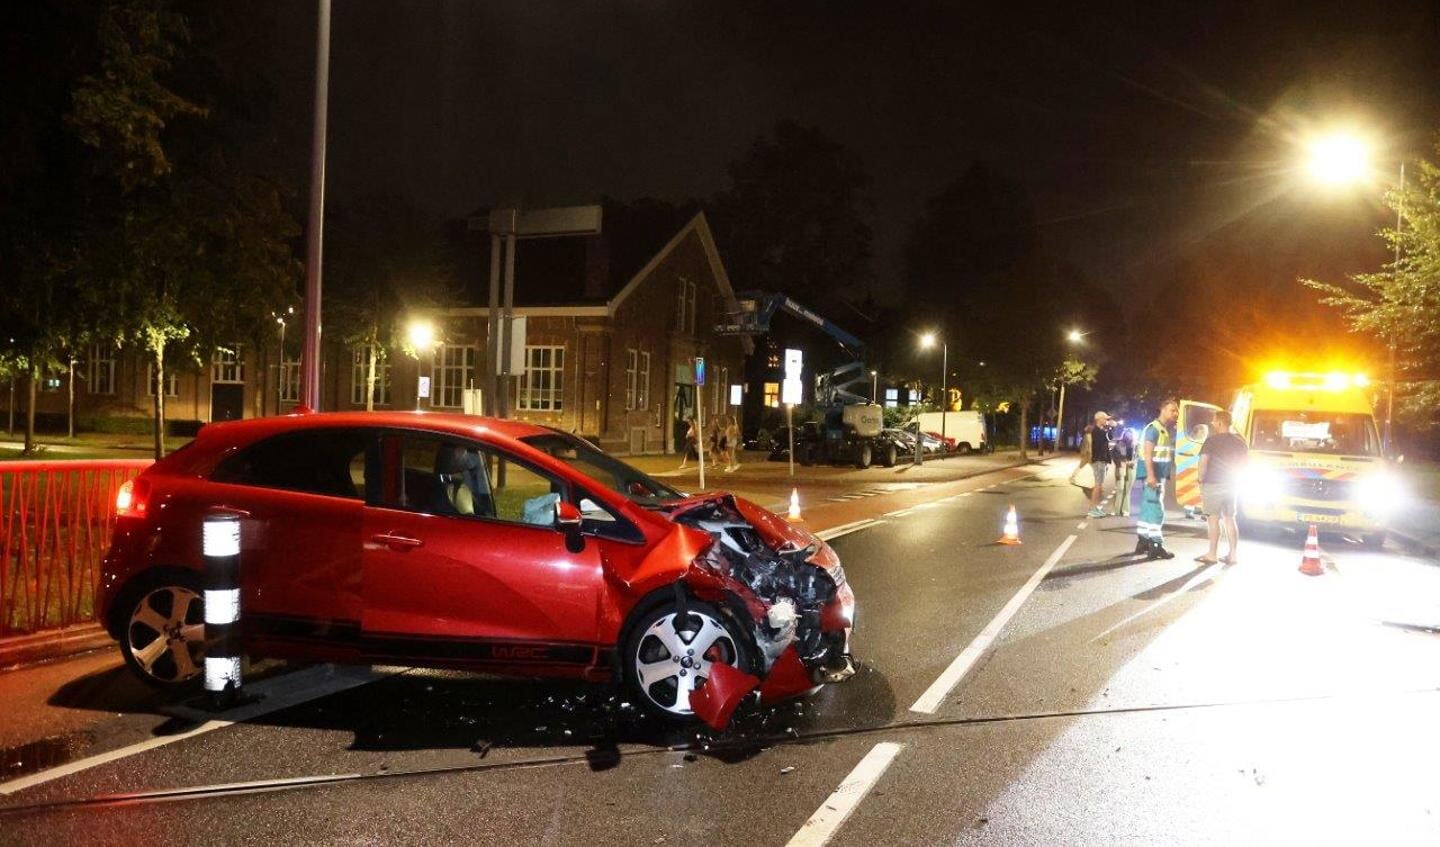 Een automobilist onder invloed heeft zaterdagavond voor veel schade gezorgd bij een frontale aanrijding tussen twee voertuigen aan de Hekellaan in Den Bosch.